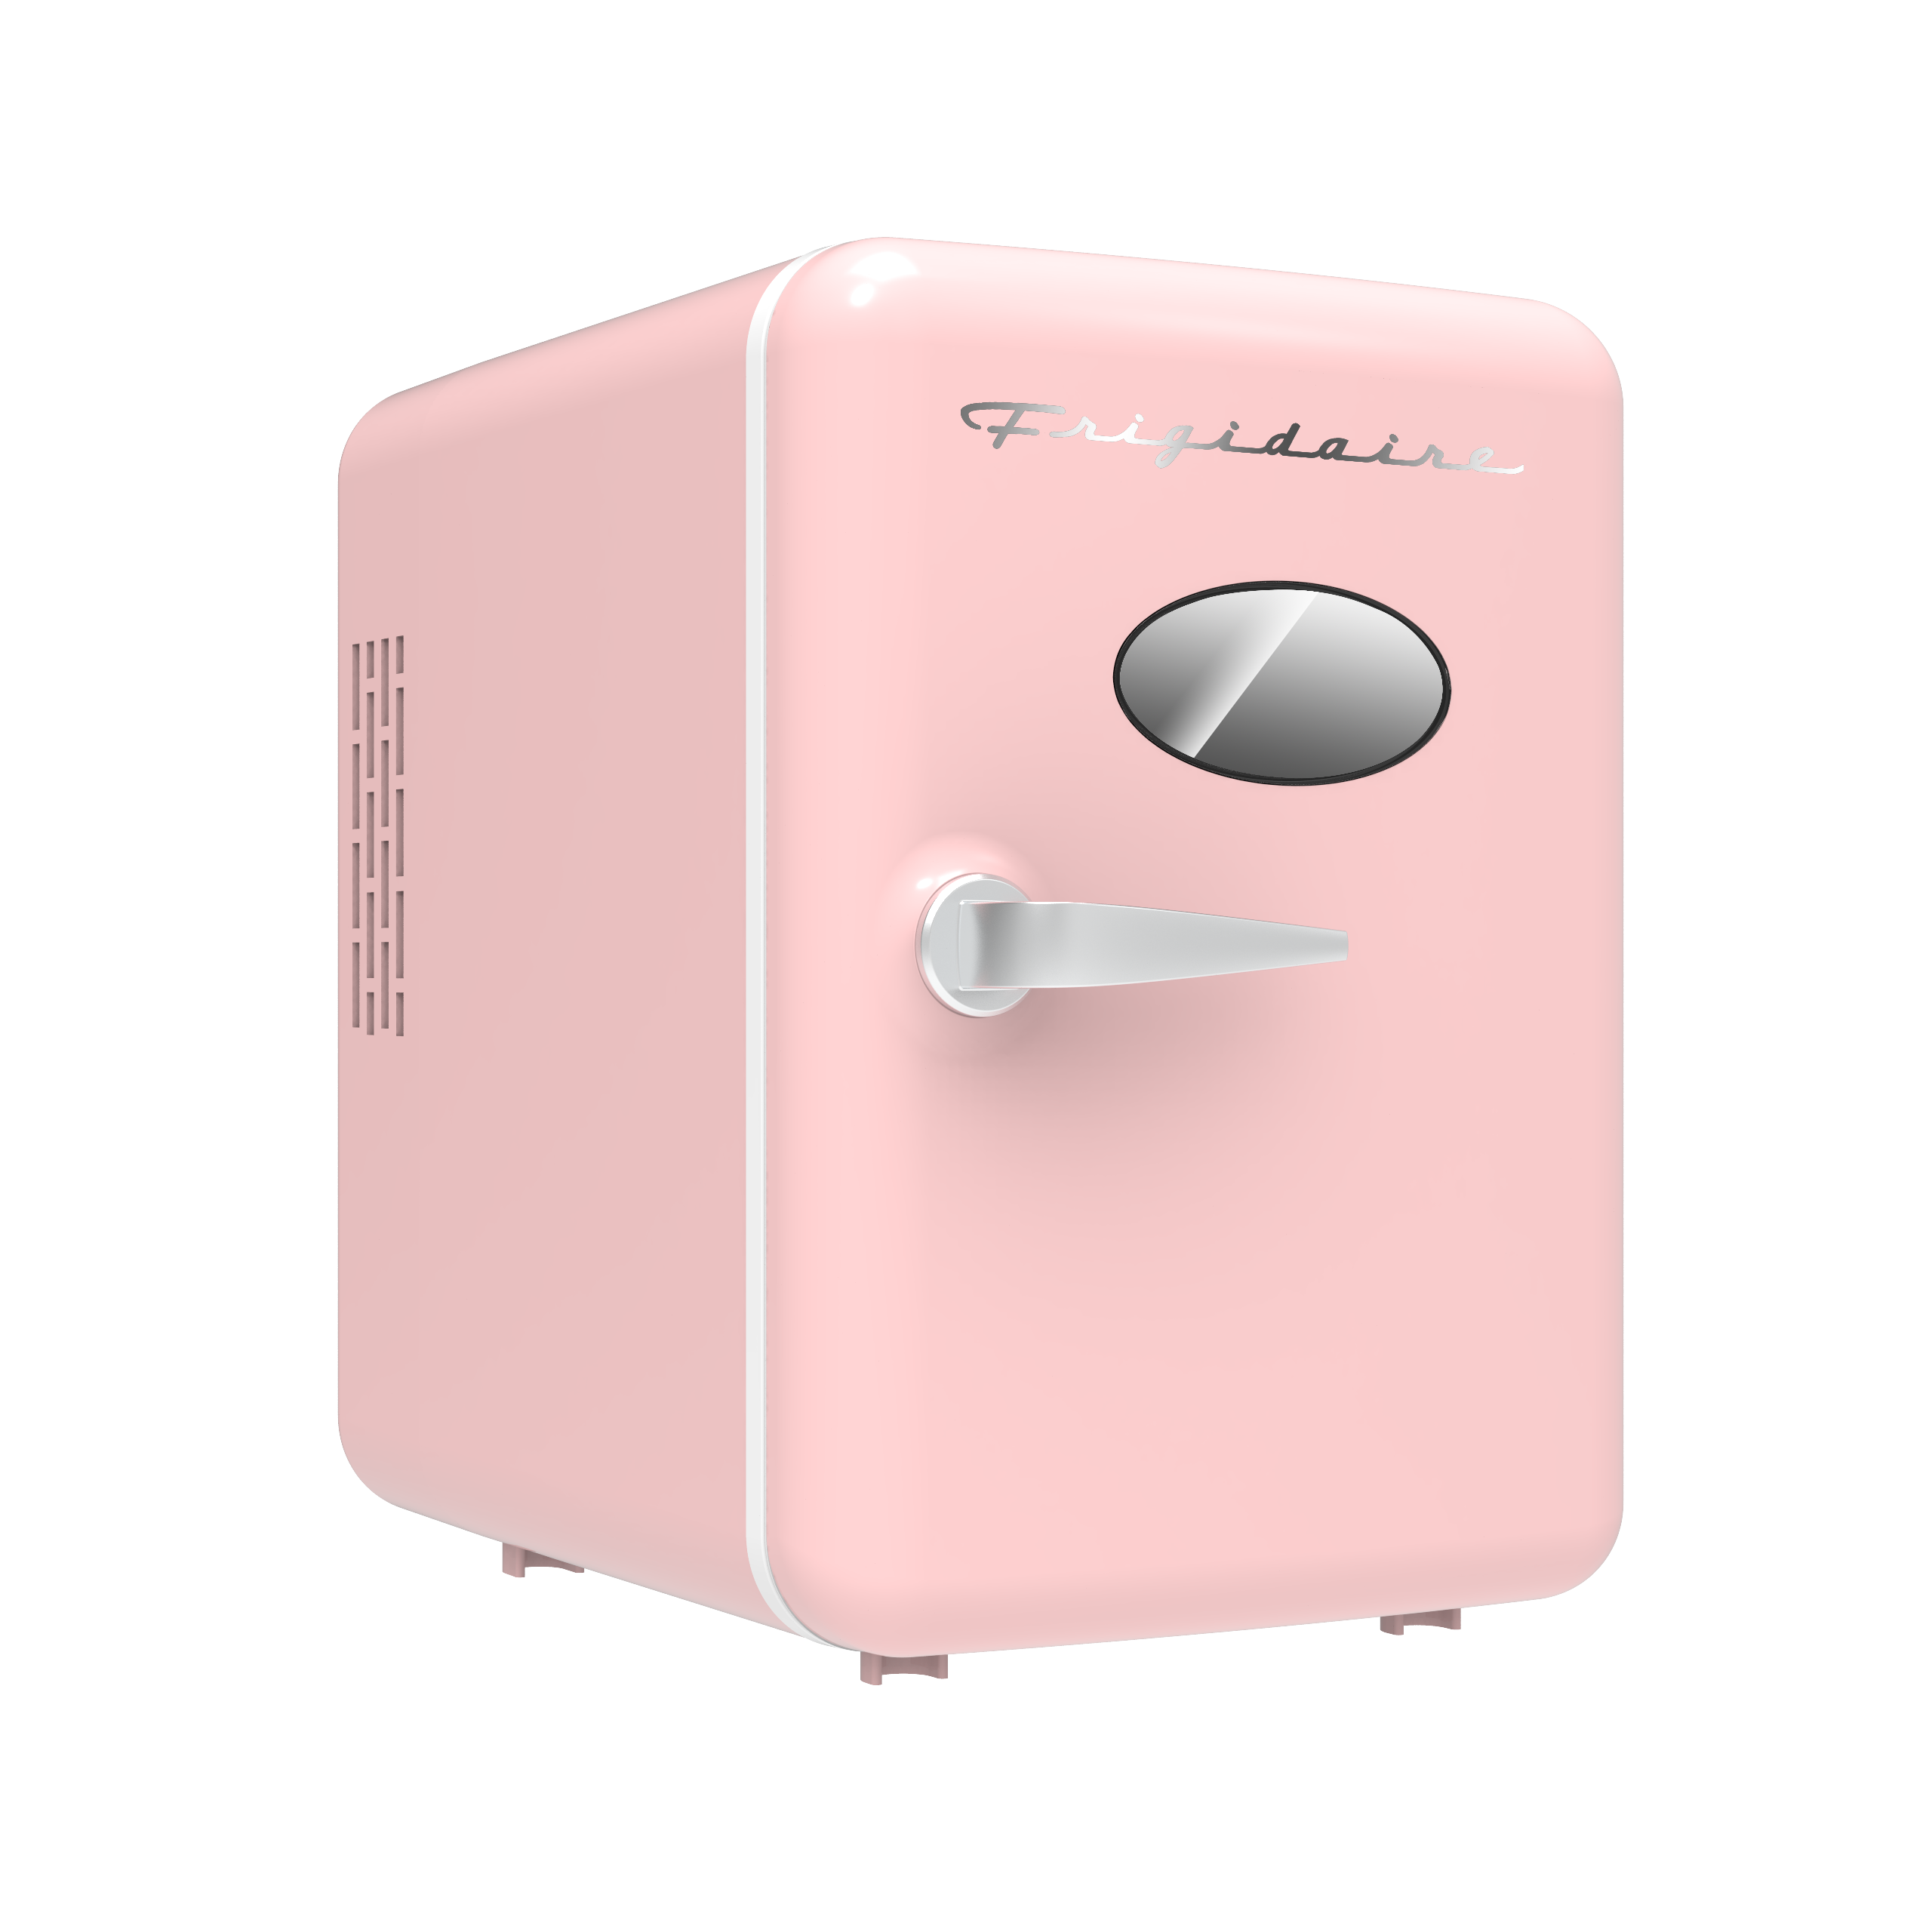 Frigidaire retro 6-can mini fridge 